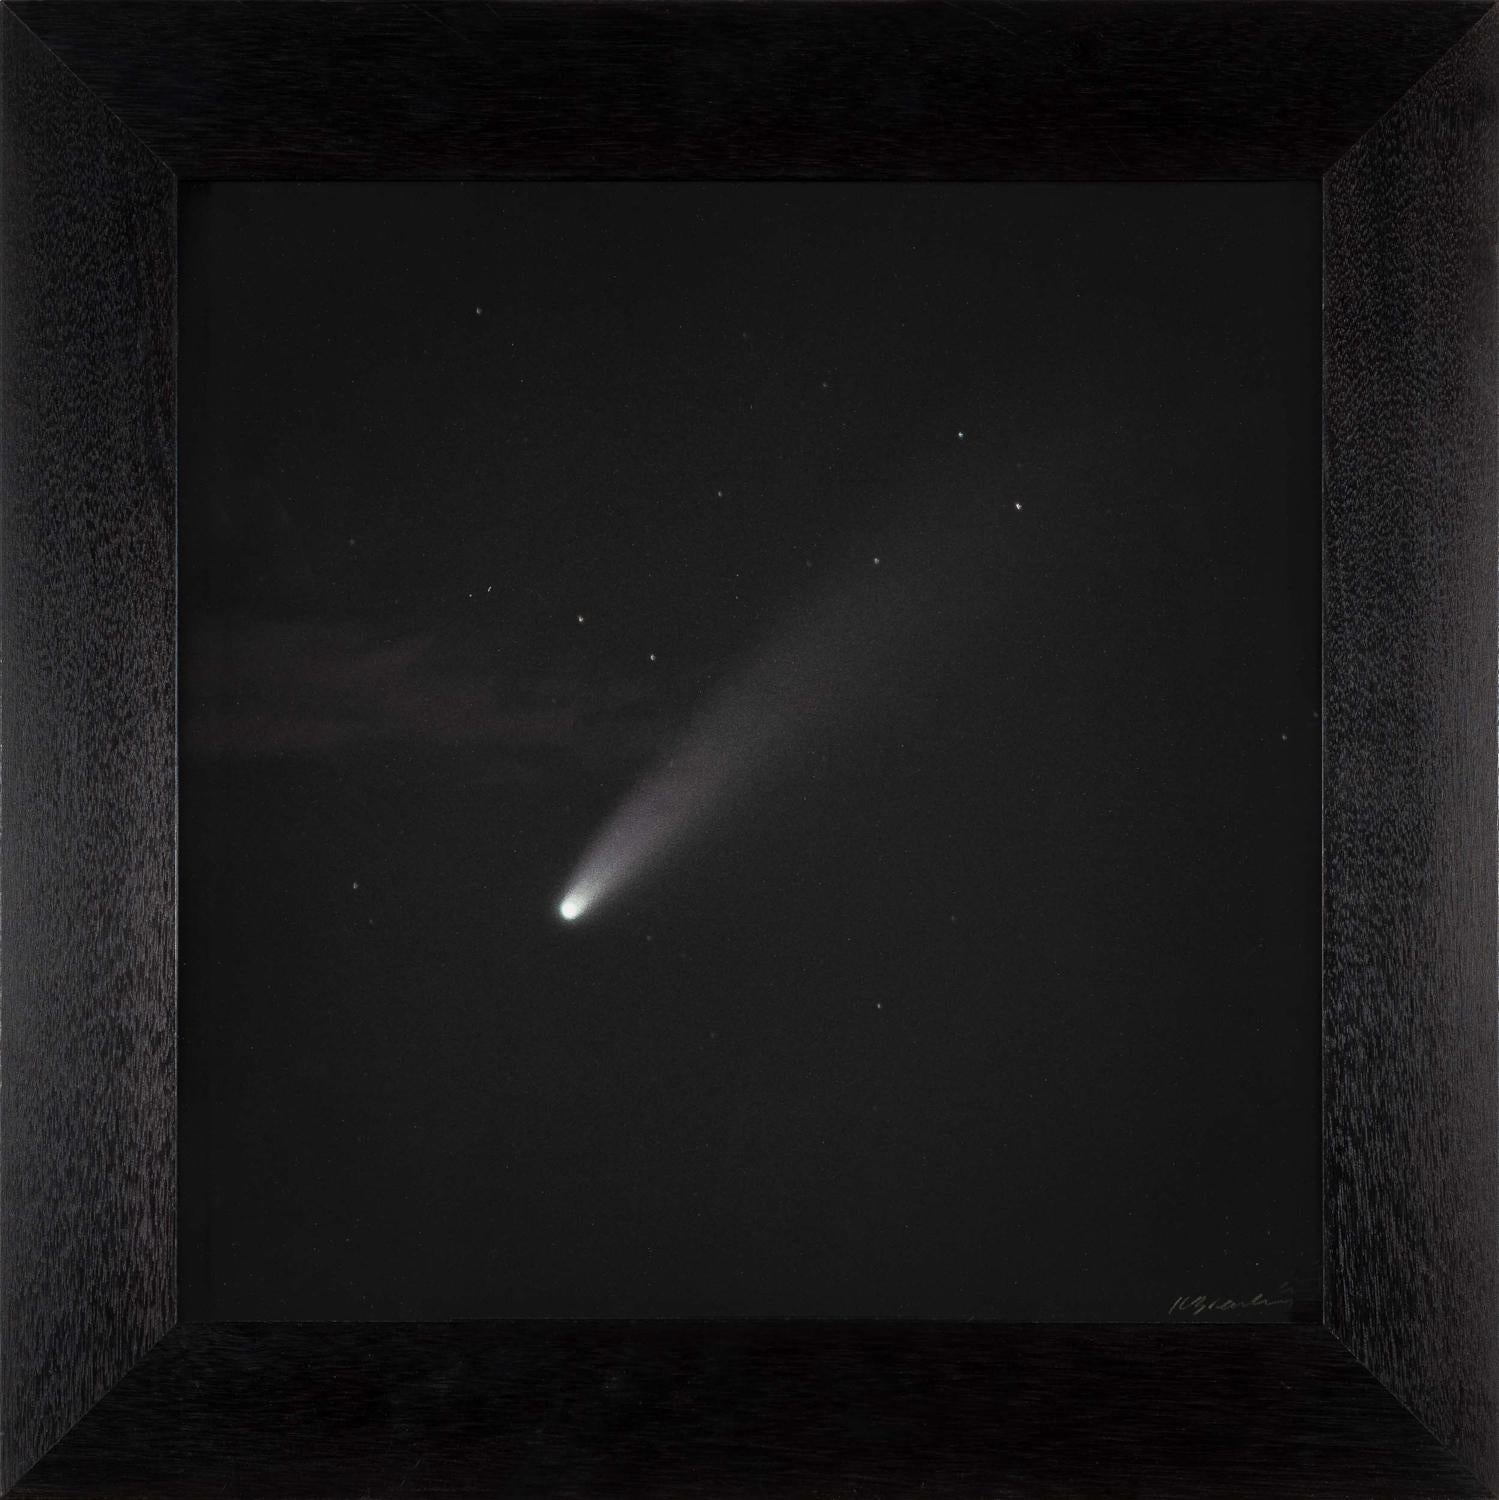  Komet Neowise